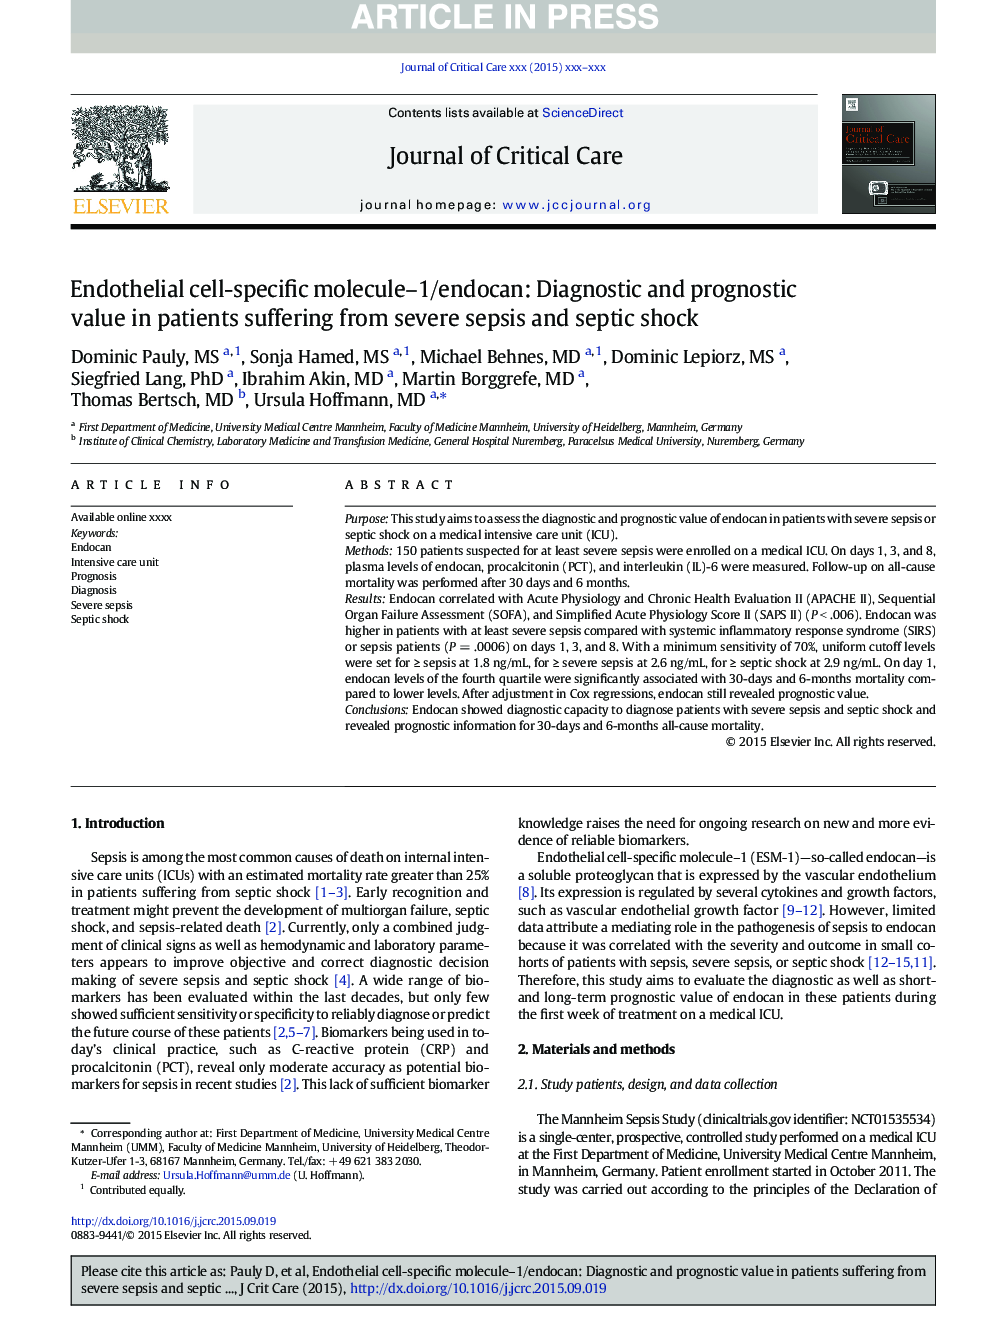 مولکول اختصاصی سلولهای اندوتلیال-1 / اندوکان: ارزش تشخیصی و پیش آگهی در بیماران مبتلا به سپسیس شدید و شوک سپتیک 